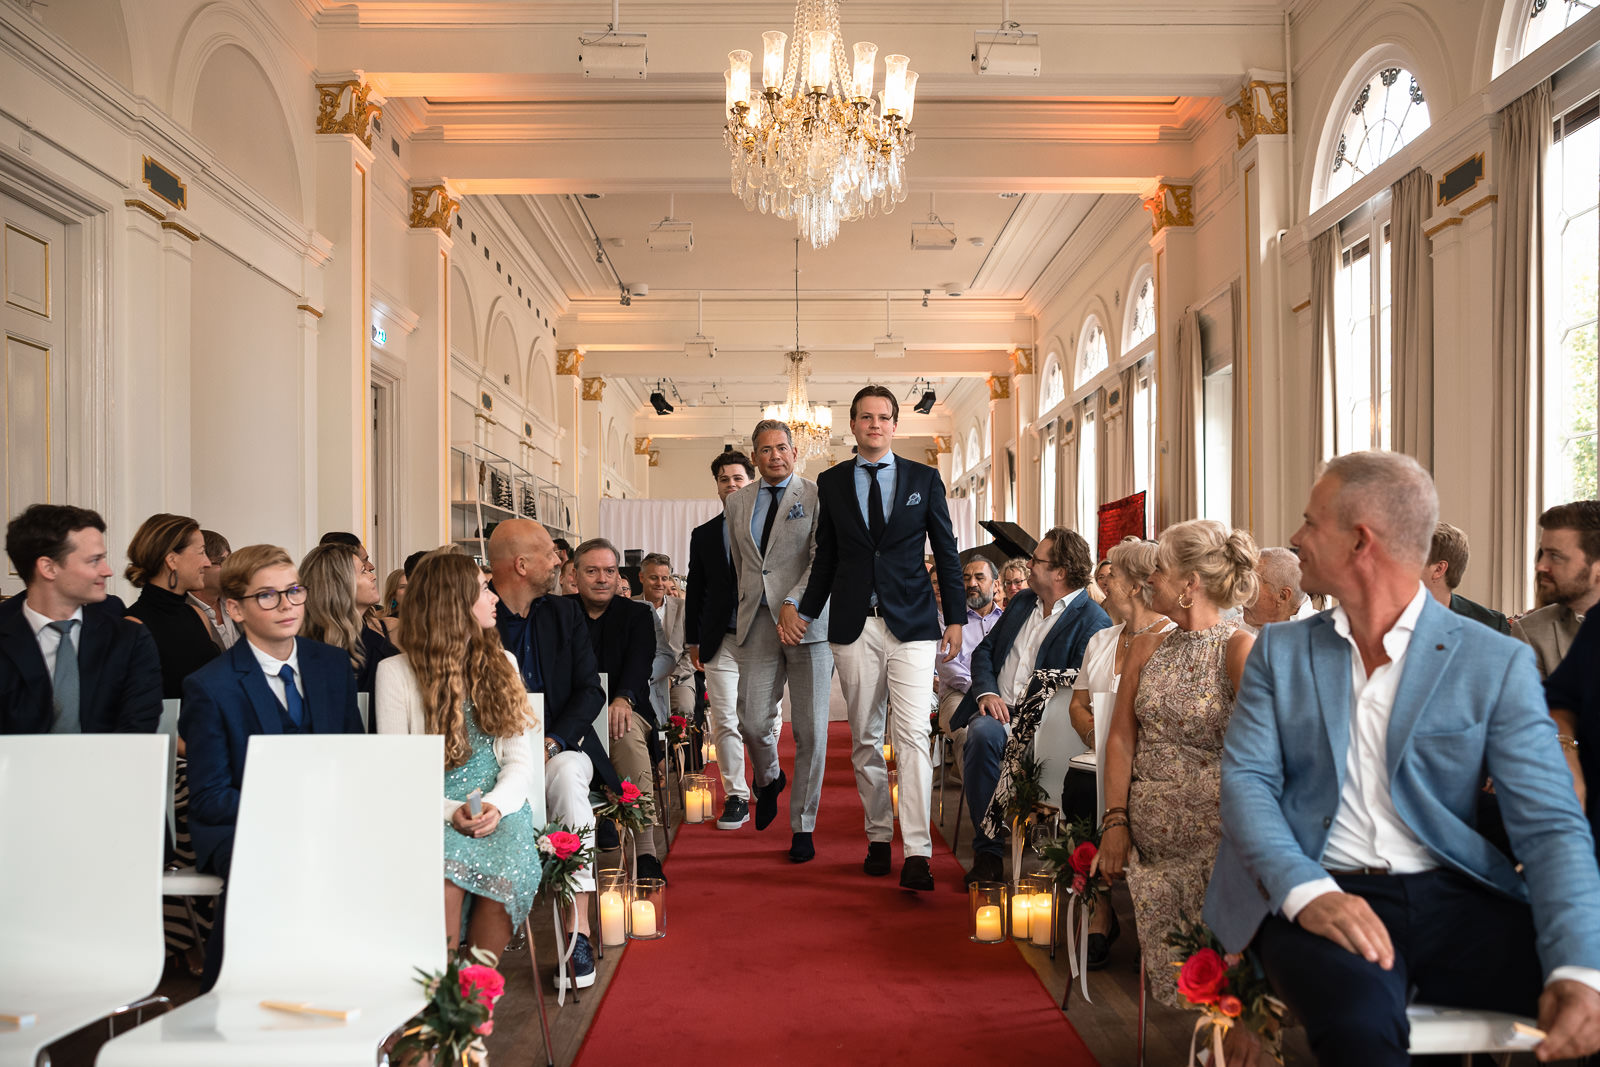 Bruidegom met zonen die samen oplopen voor de ceremonie bij Wereld Museum Rotterdam